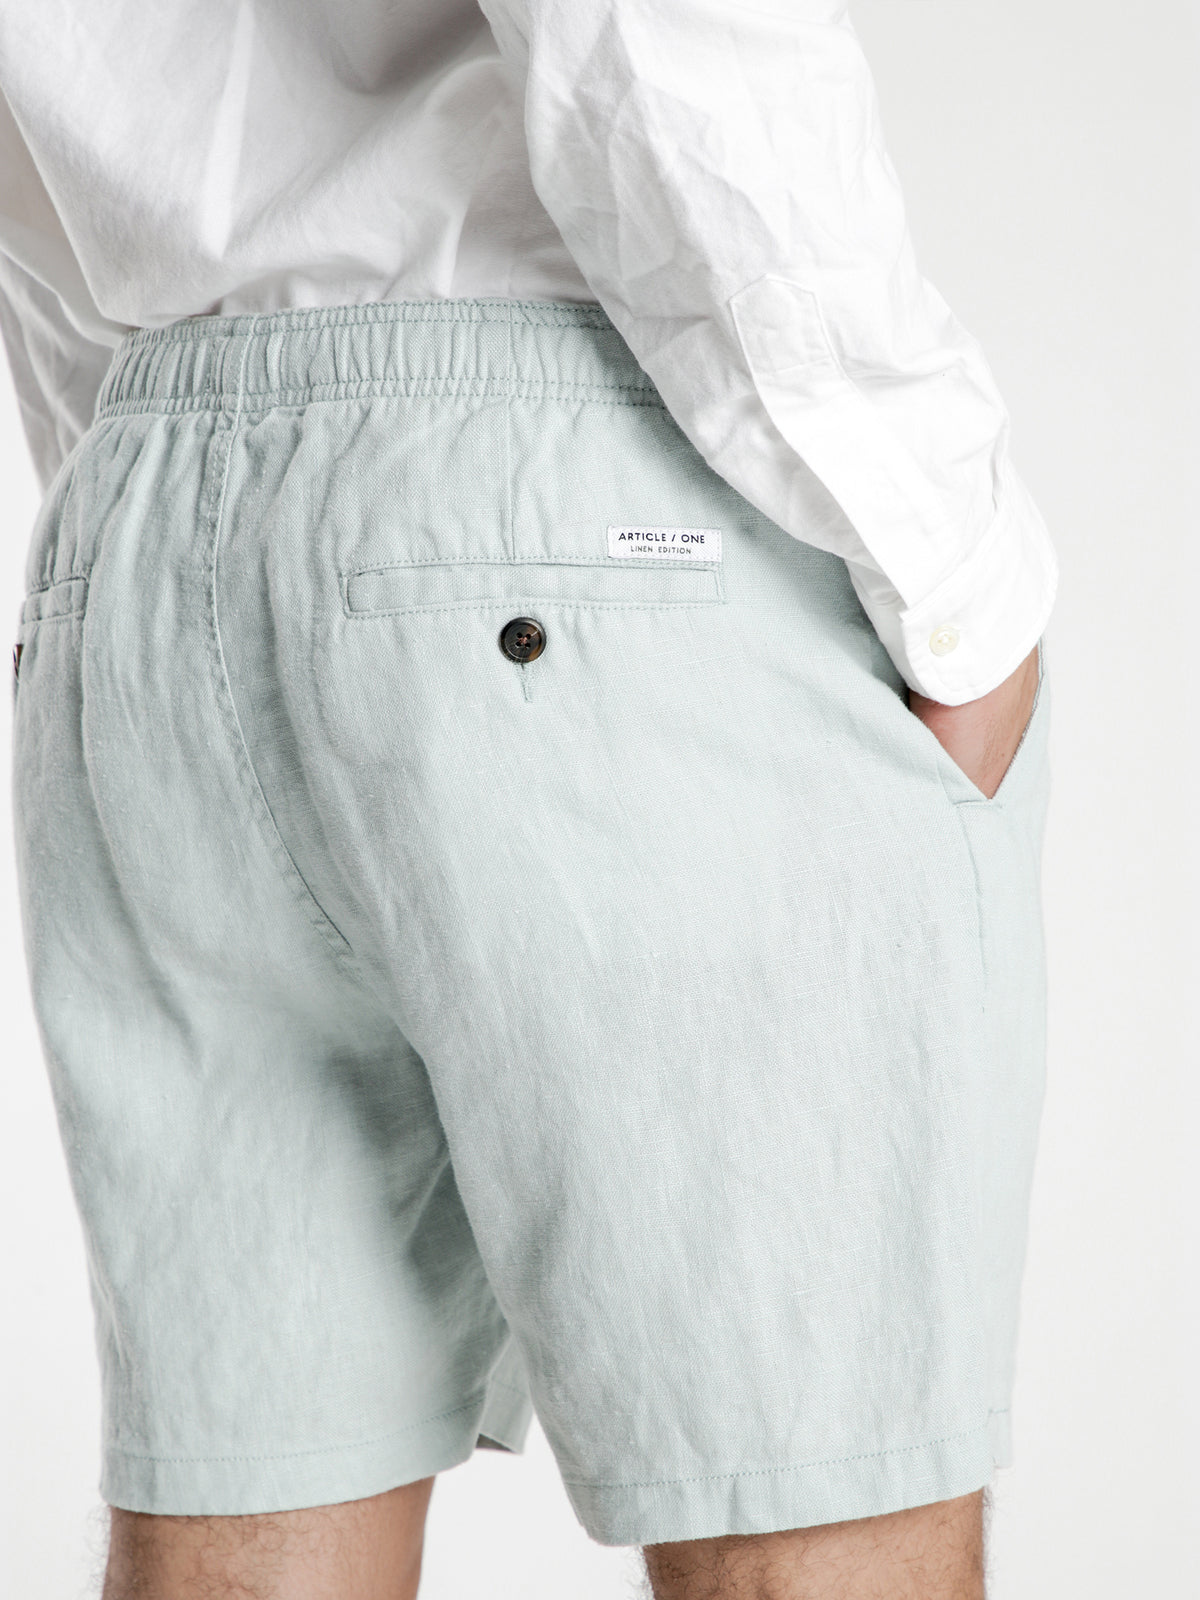 Noosa Linen Shorts in Seafoam